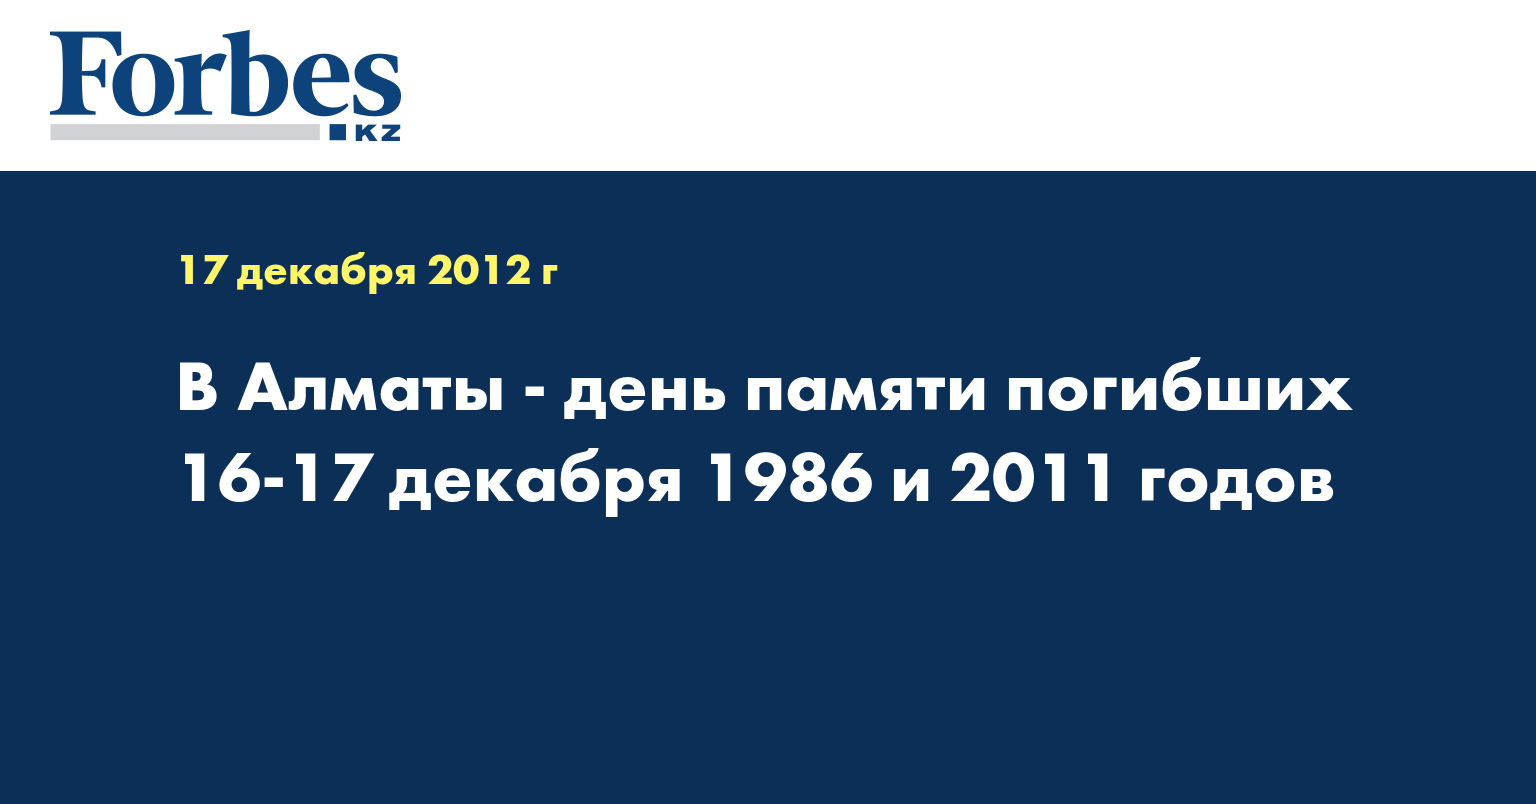 В Алматы - день памяти погибших 16-17 декабря 1986 и 2011 годов